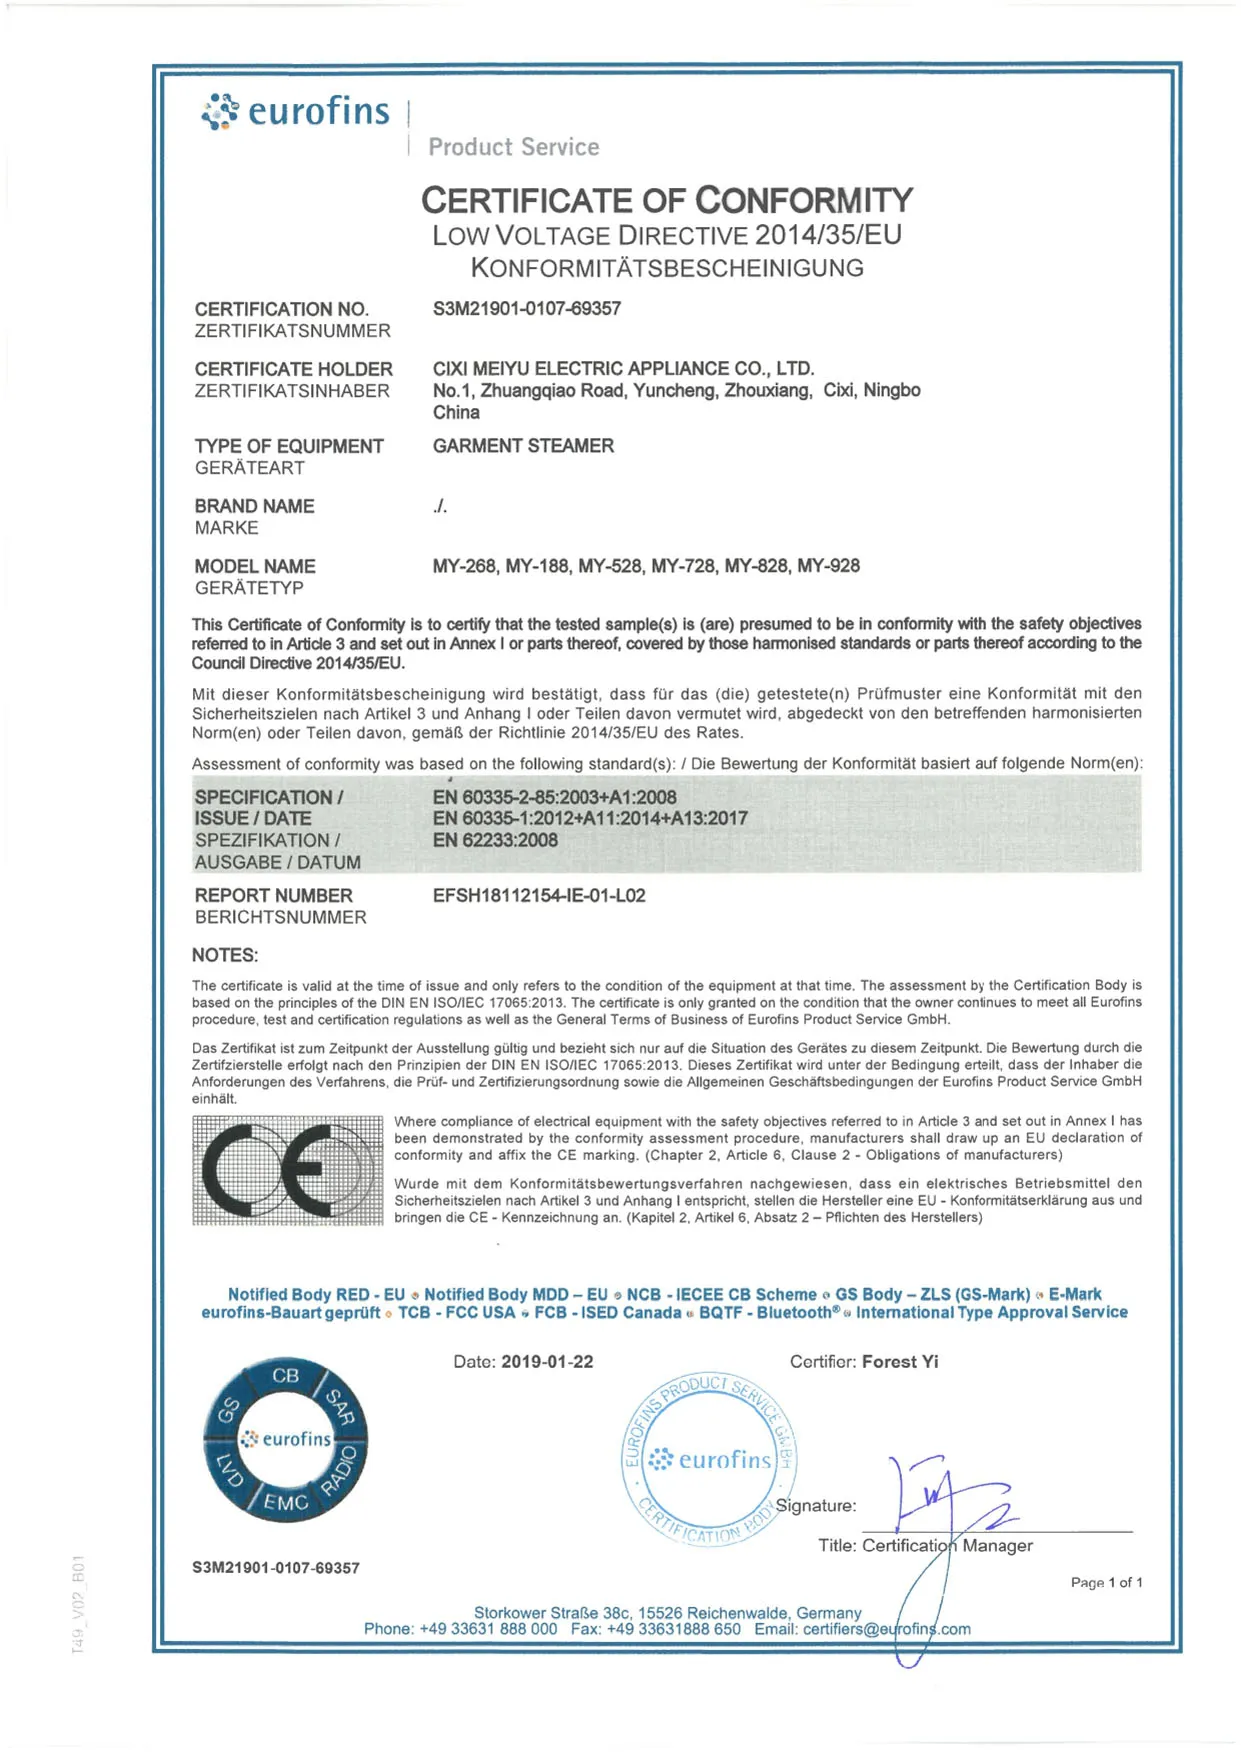 LVD-certificaat S3M21901-0107-69357_LVD CoC